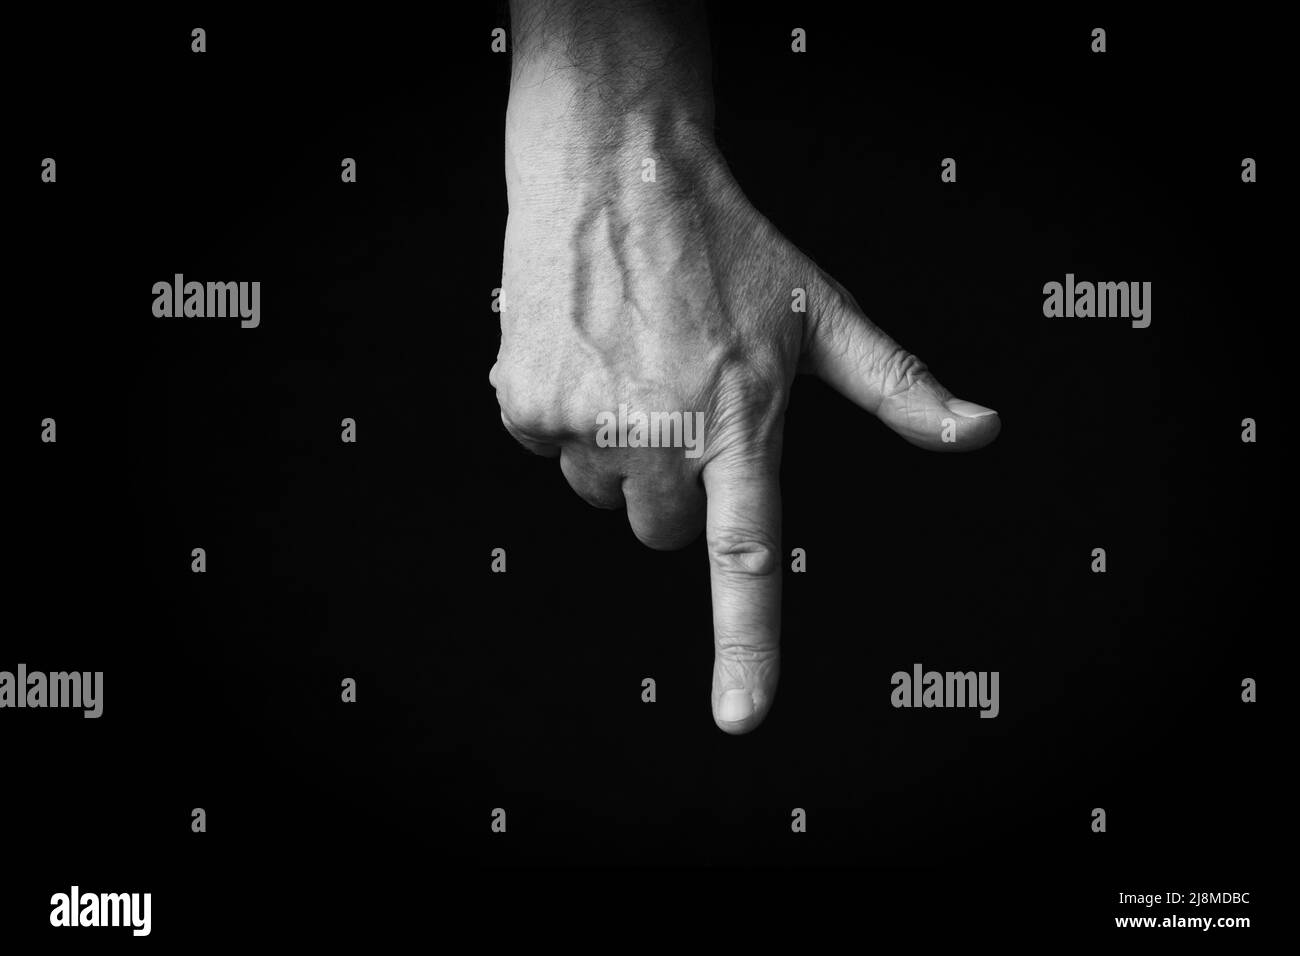 Image spectaculaire en noir et blanc de l'index de la main arrière pointant vers le bas emoji isolé sur fond noir Banque D'Images